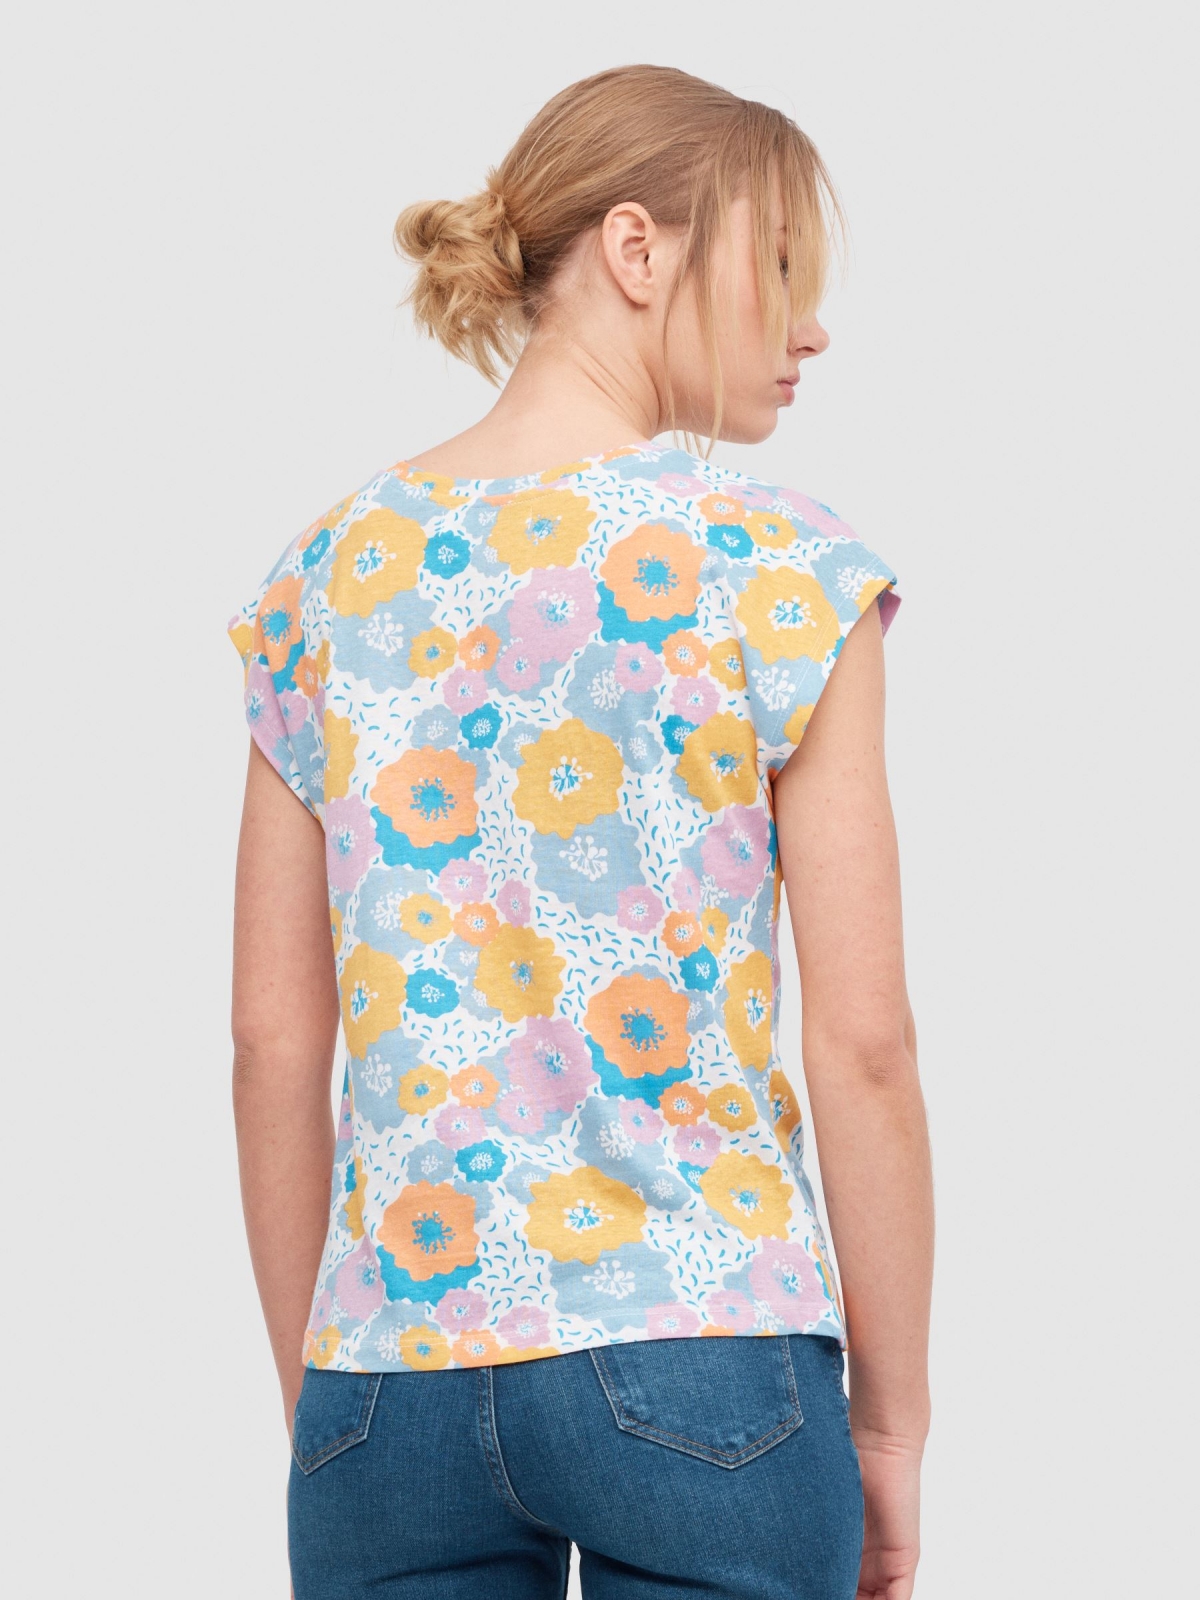 Camiseta estampado flores multicolor vista media trasera